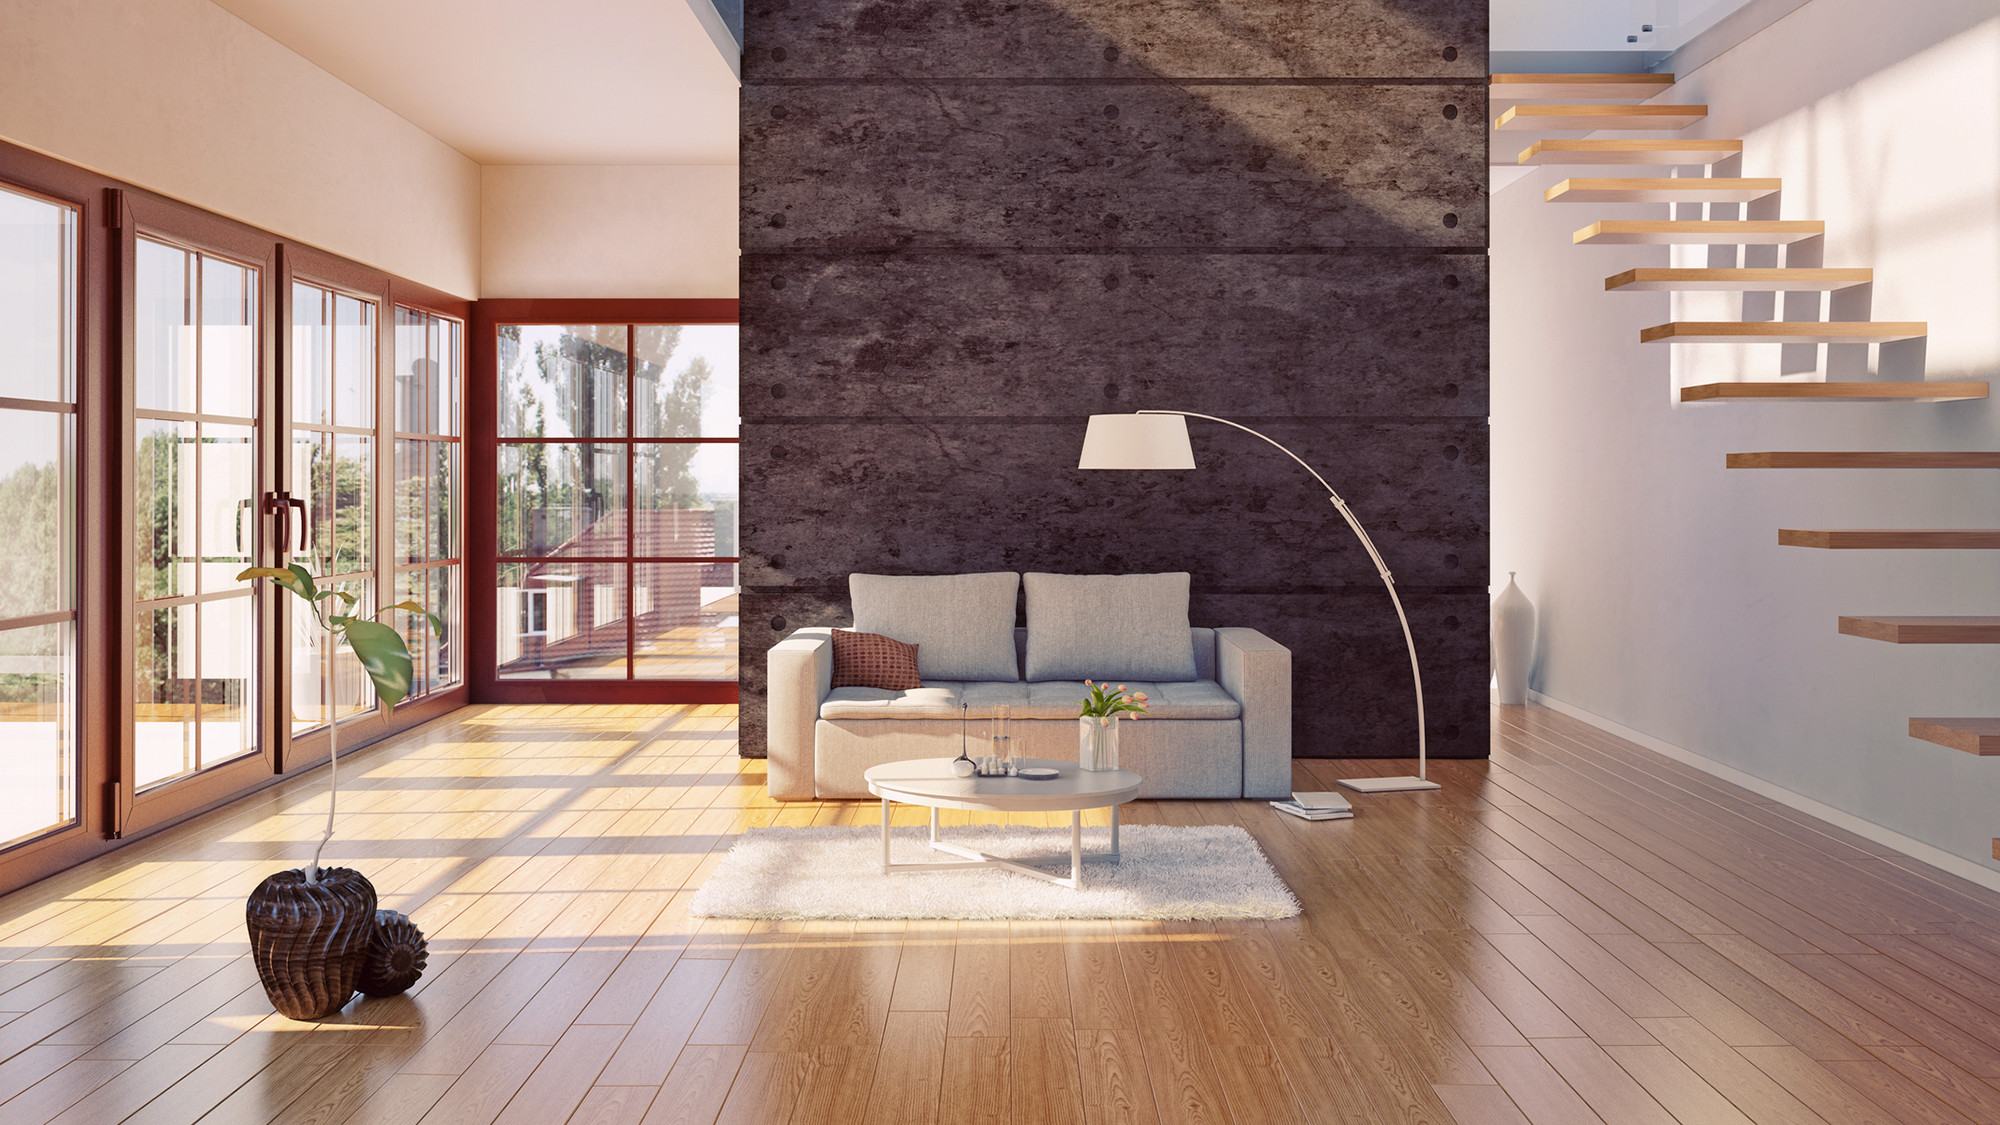 discount hardwood flooring calgary of do hardwood floors provide the best return on investment realtor coma regarding hardwood floors investment